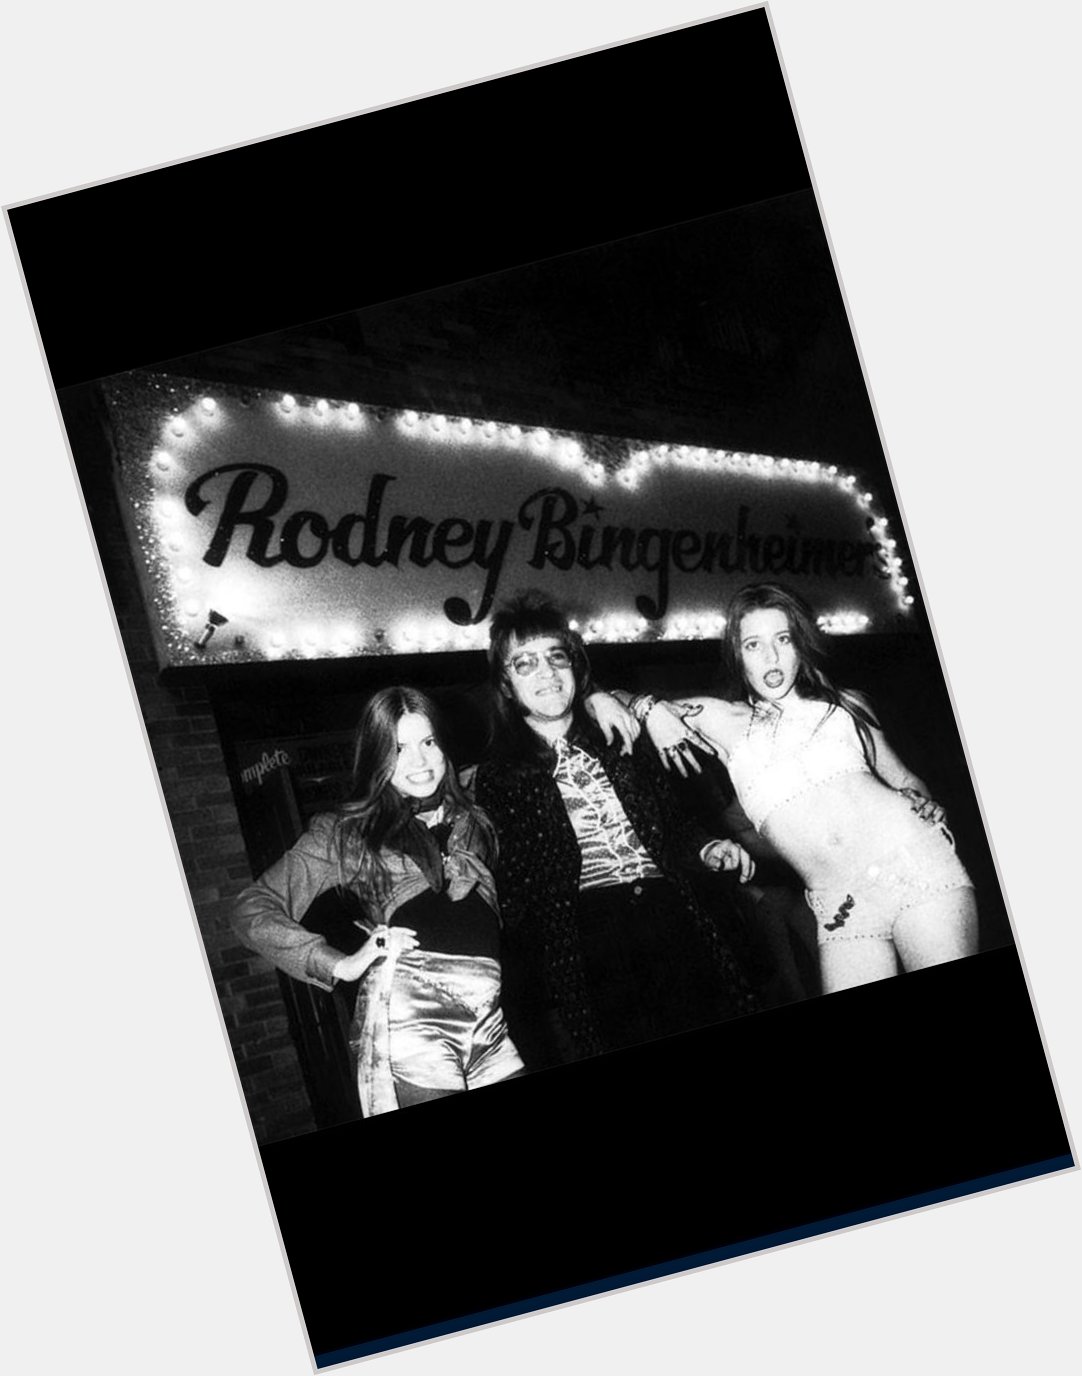 Happy Birthday to the Mayor of the Sunset Strip, Rodney Bingenheimer! 